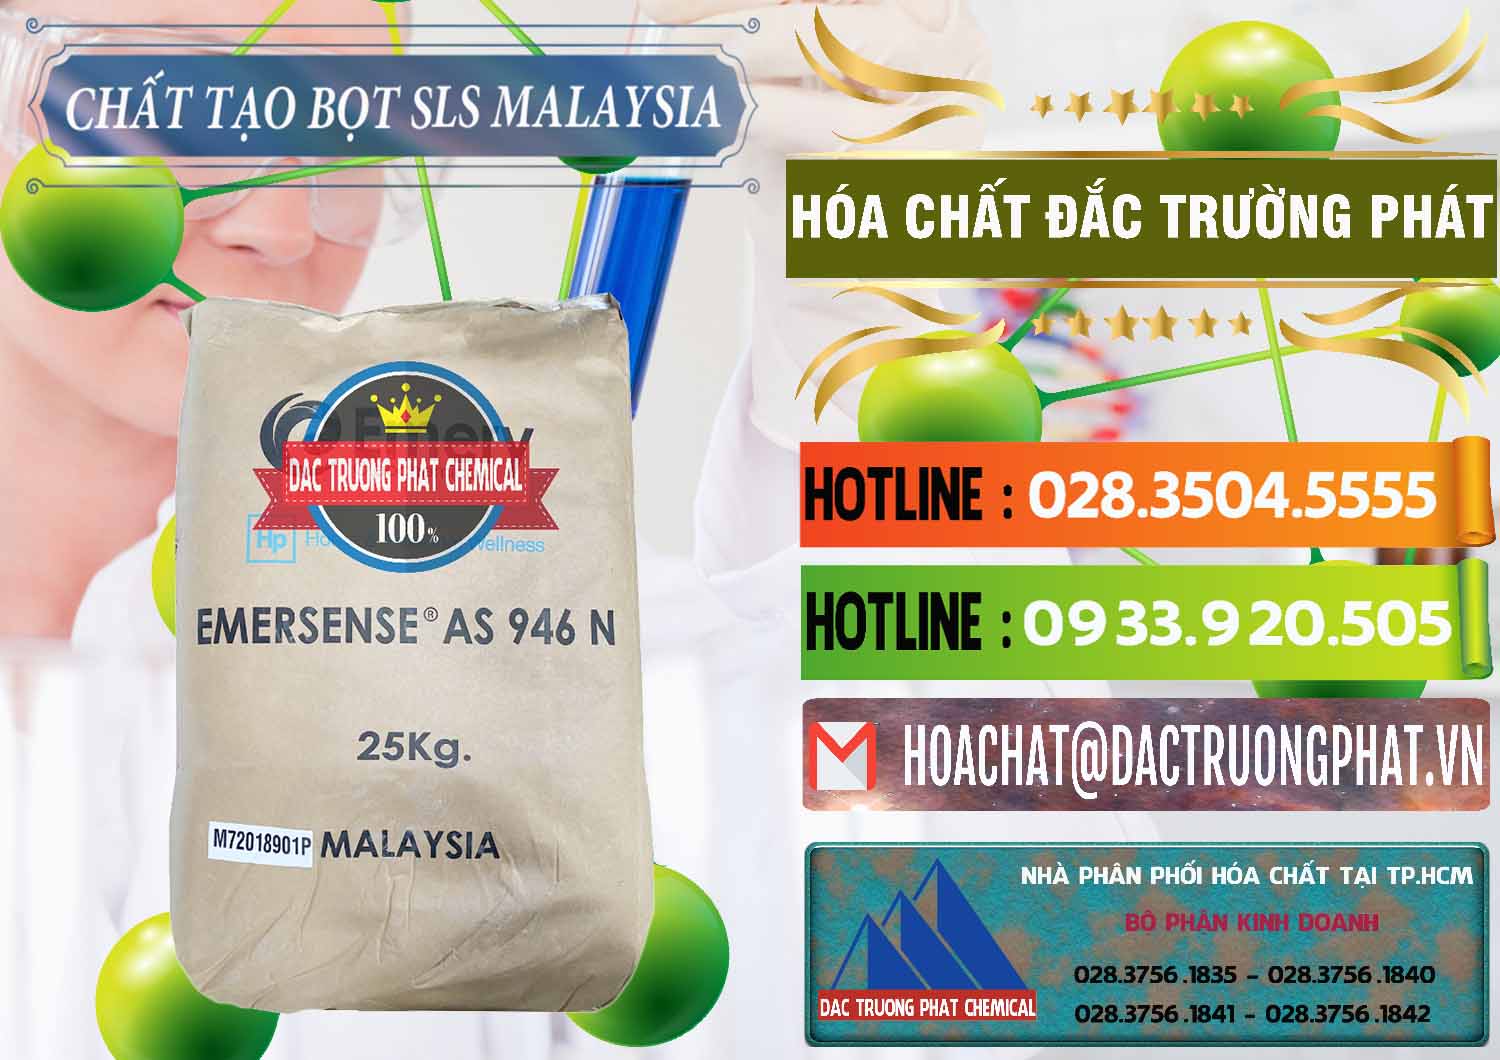 Cty nhập khẩu và bán Chất Tạo Bọt SLS Emery - Emersense AS 946N Mã Lai Malaysia - 0423 - Bán & phân phối hóa chất tại TP.HCM - cungcaphoachat.com.vn